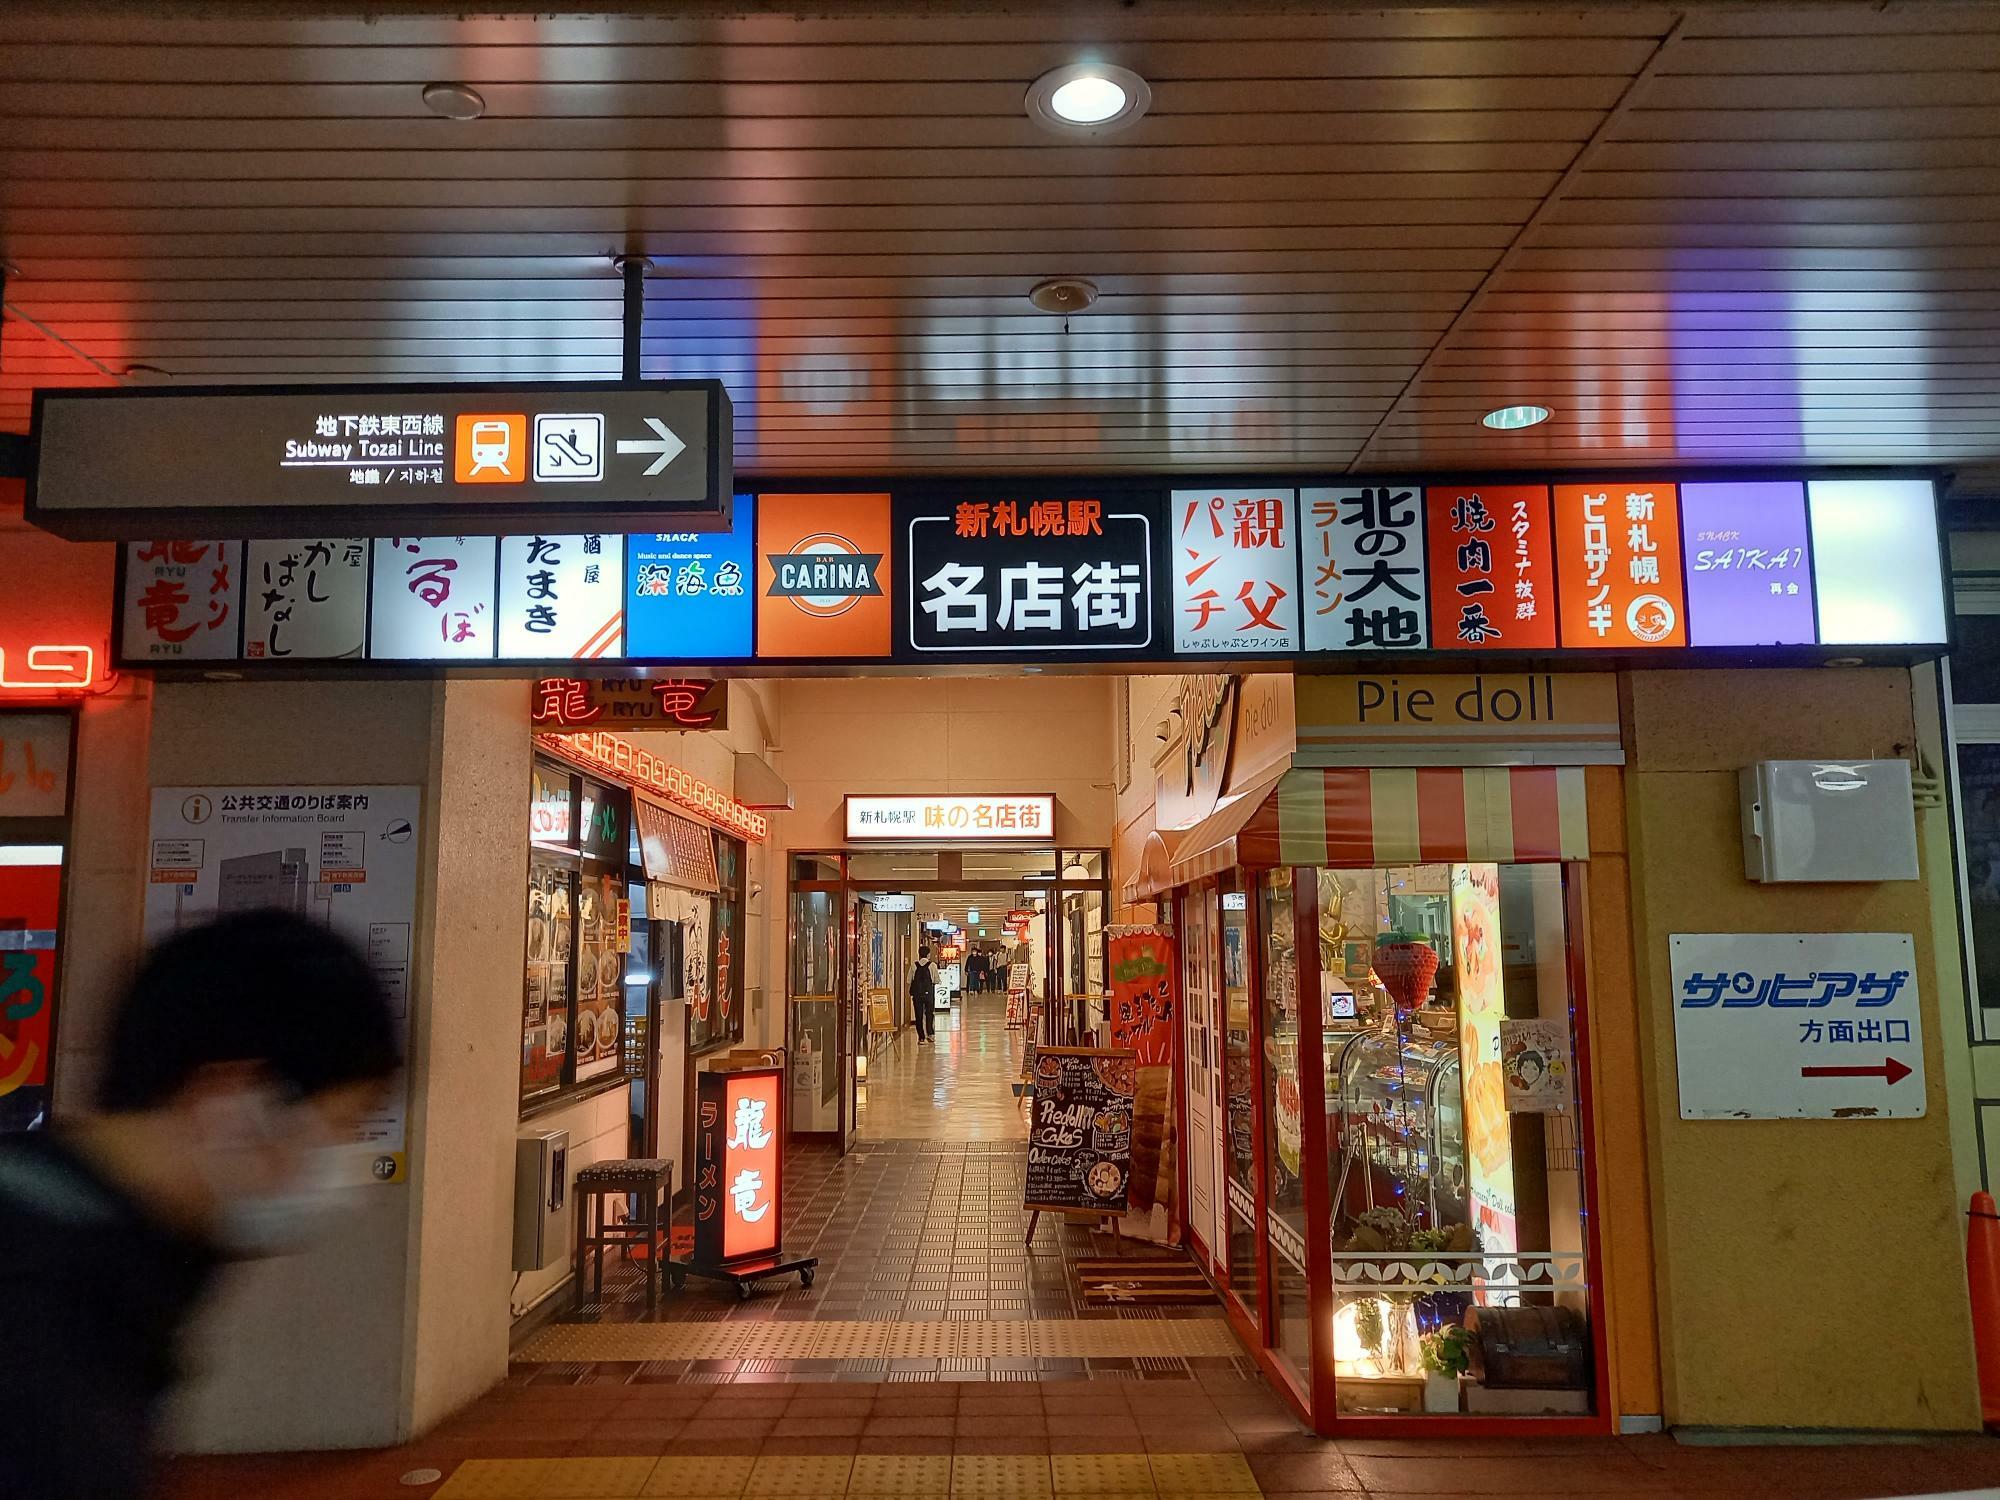 JR新札幌駅の改札からでて目の前は、新札幌名店街。まっすぐ進むと右手にピロザンギがあります